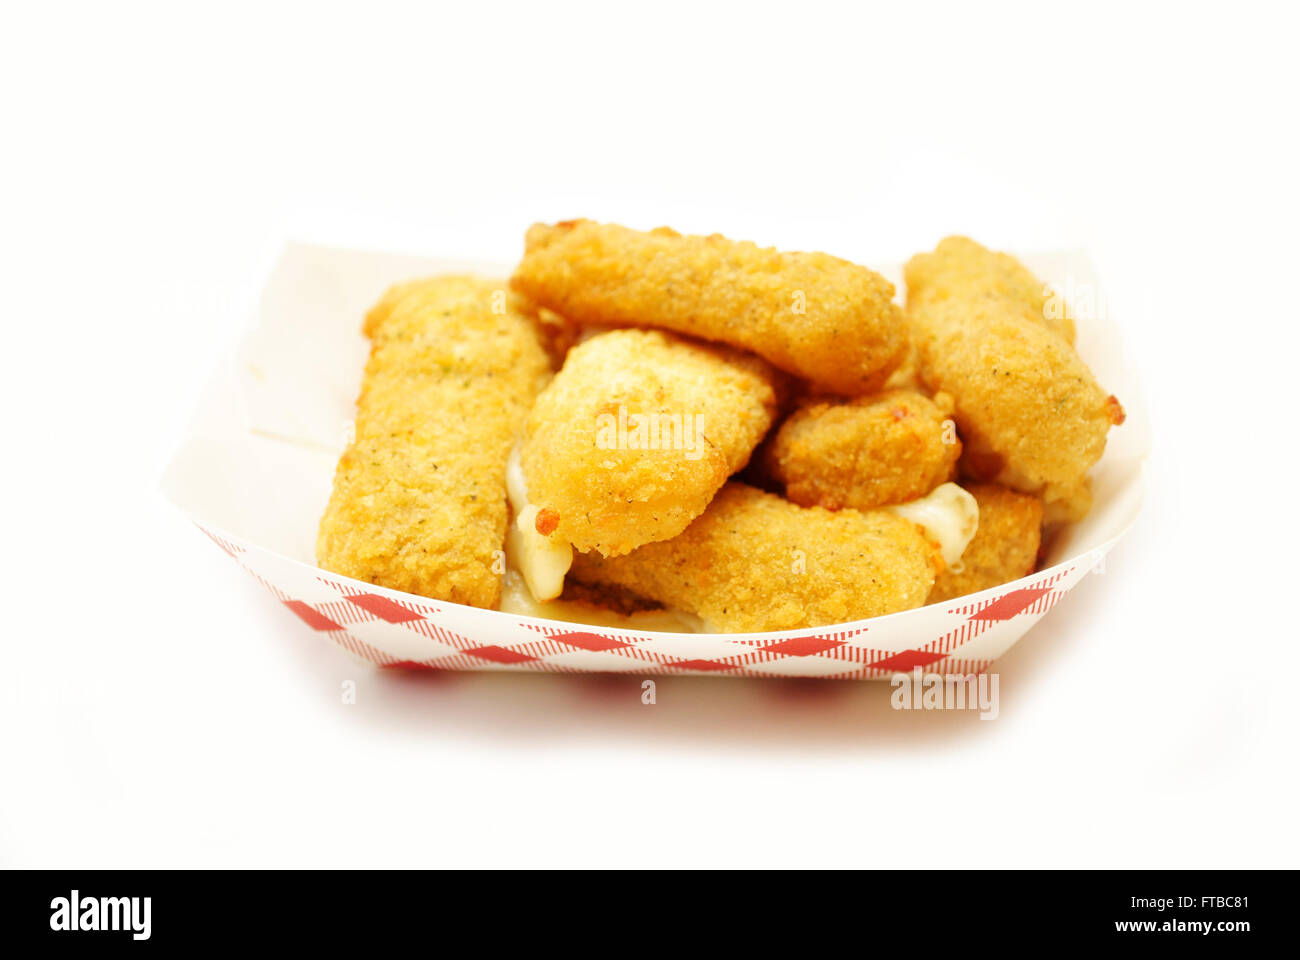 Mozzarella bastoni in un fast food contenitore Foto Stock